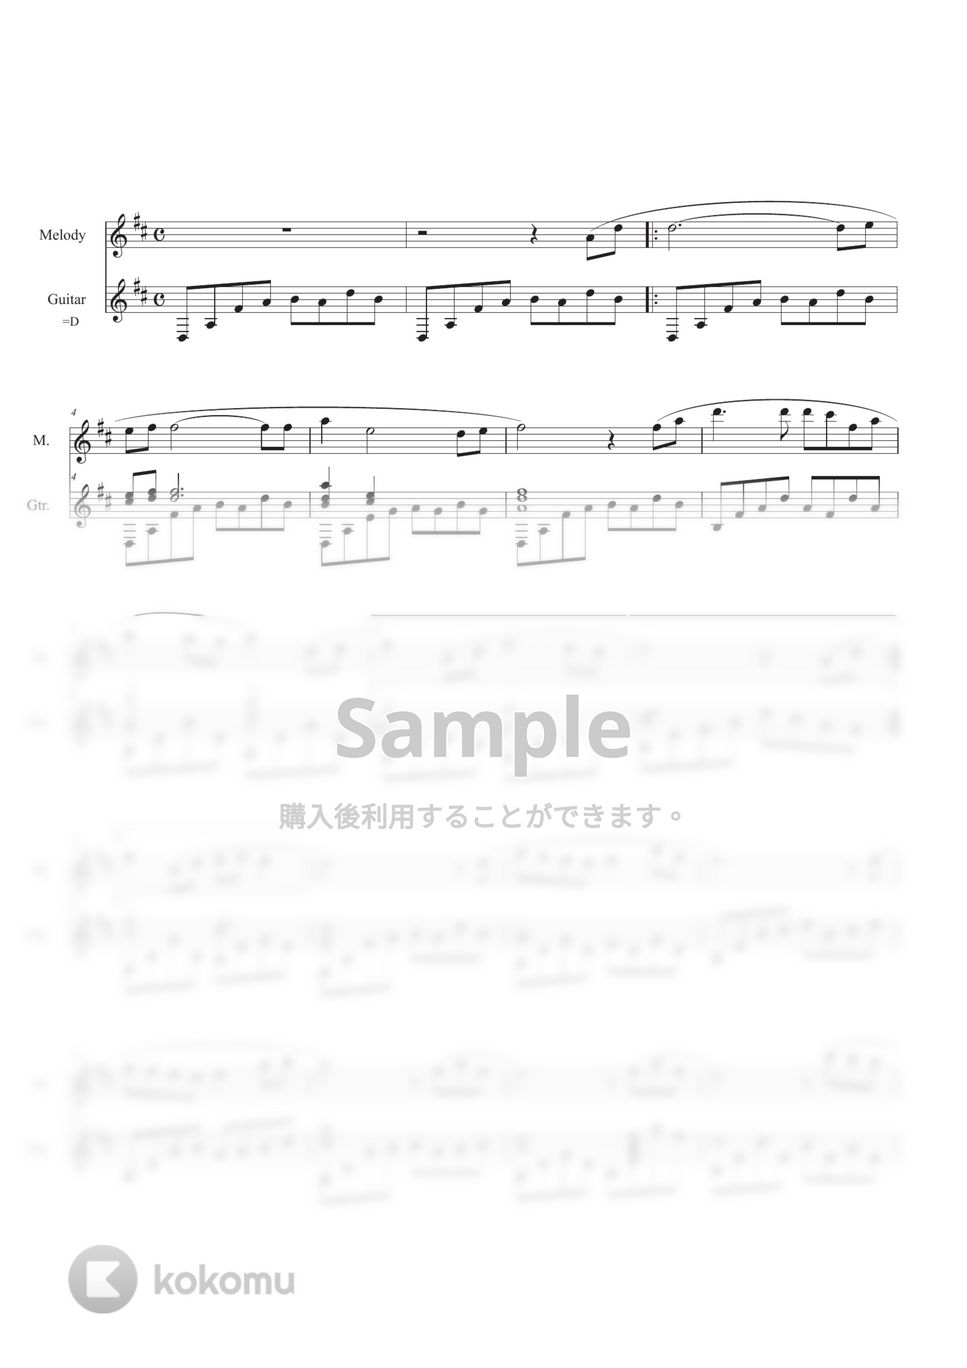 久石 譲 - アシタカとサン (ギター+メロディ) by Ponze Records